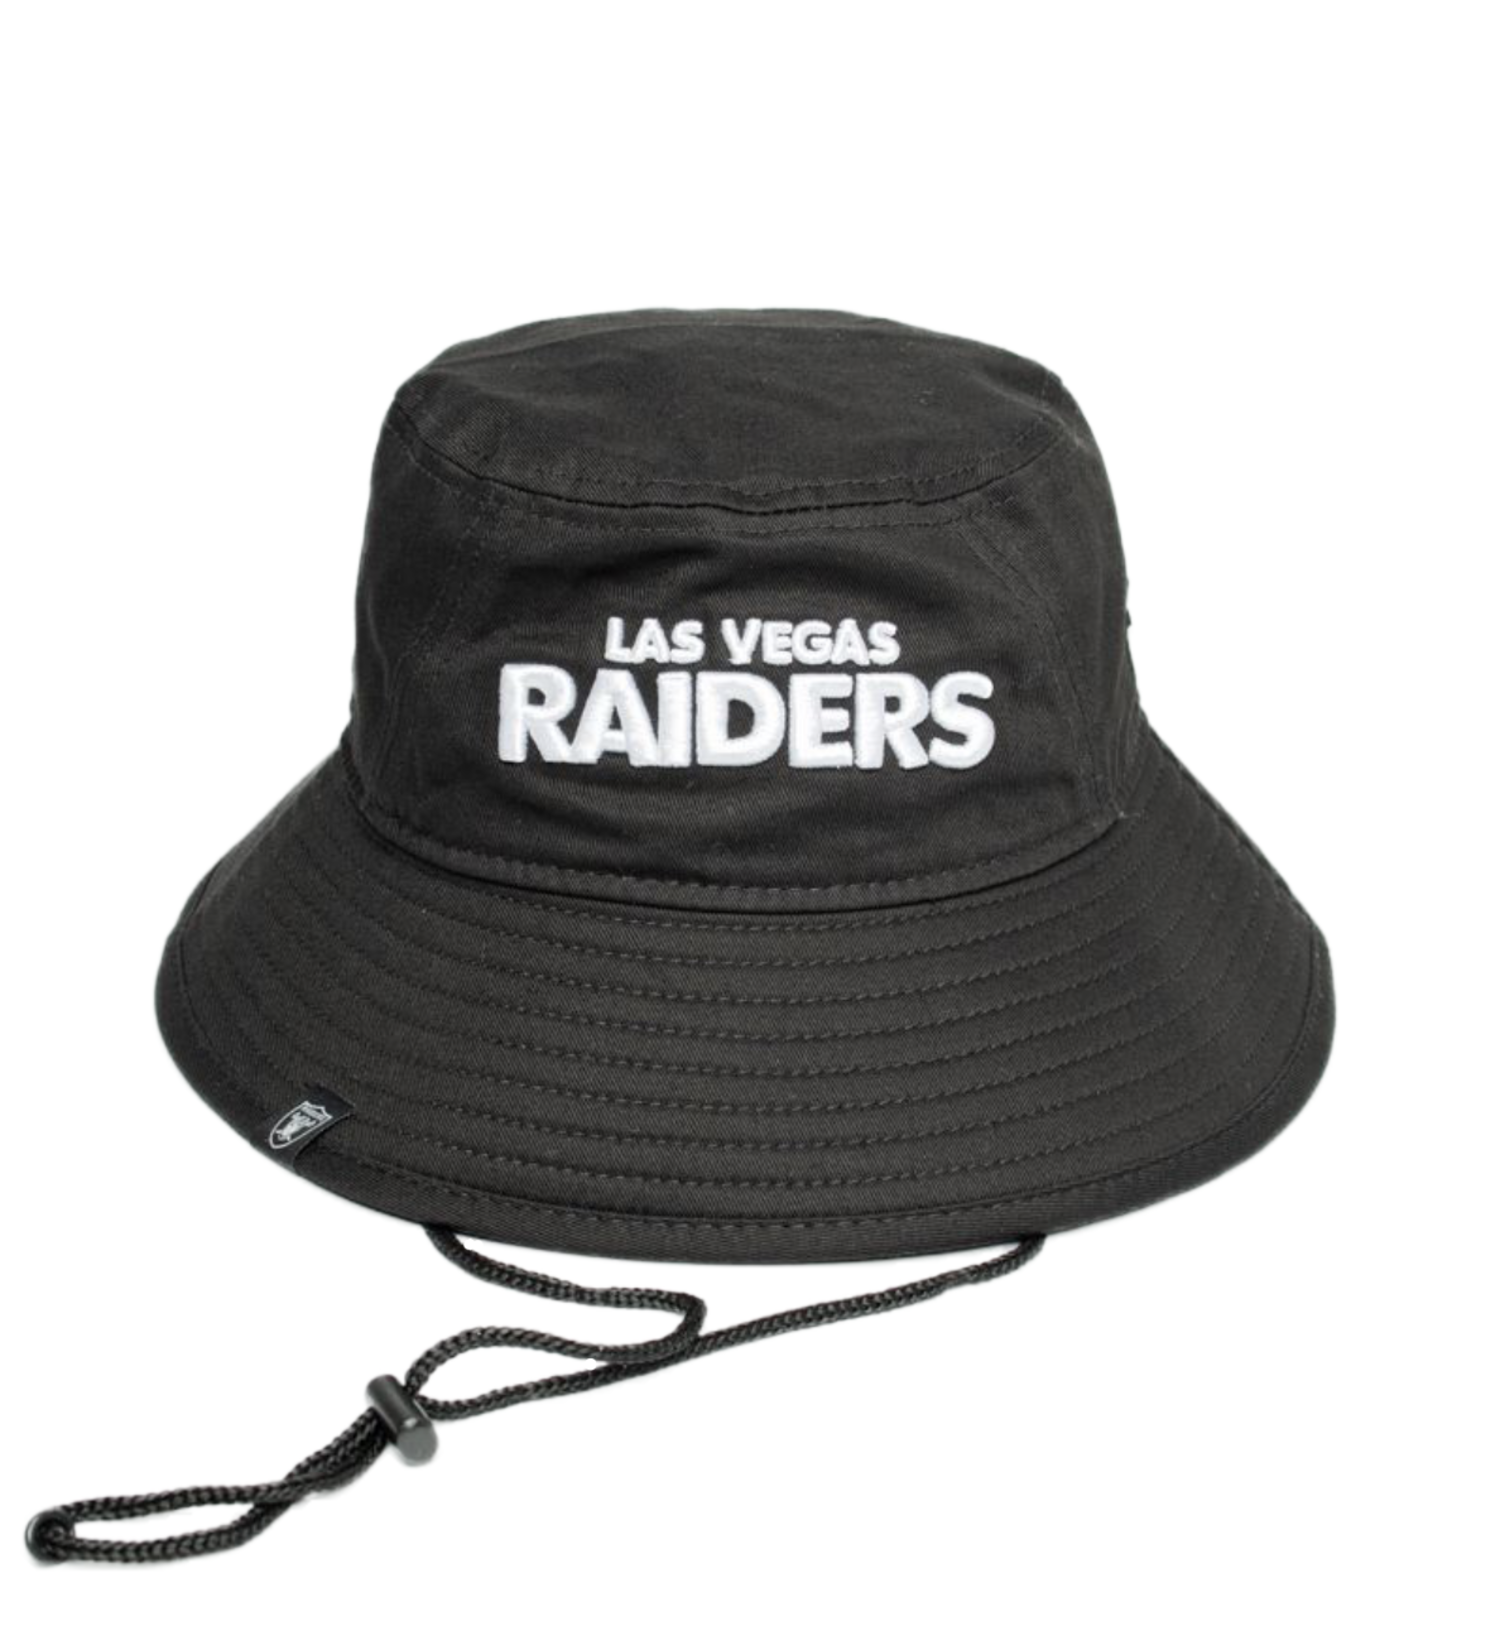 Las Vegas Raiders The Memory Company Personalized Black 46oz